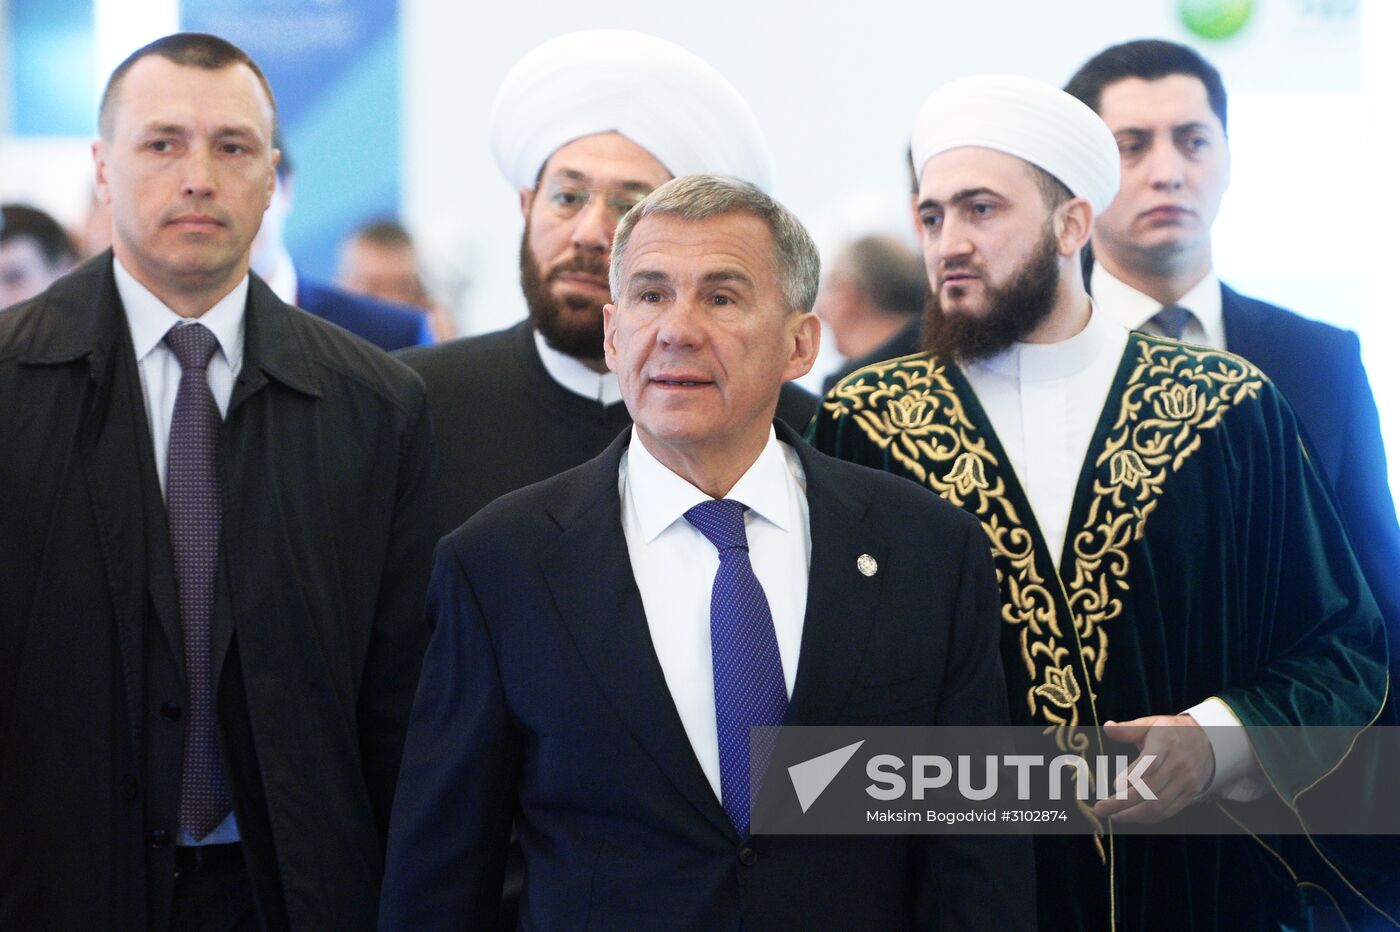 9th International Economic Summit 'Russia - Islamic World: KazanSummit2017.' Day two